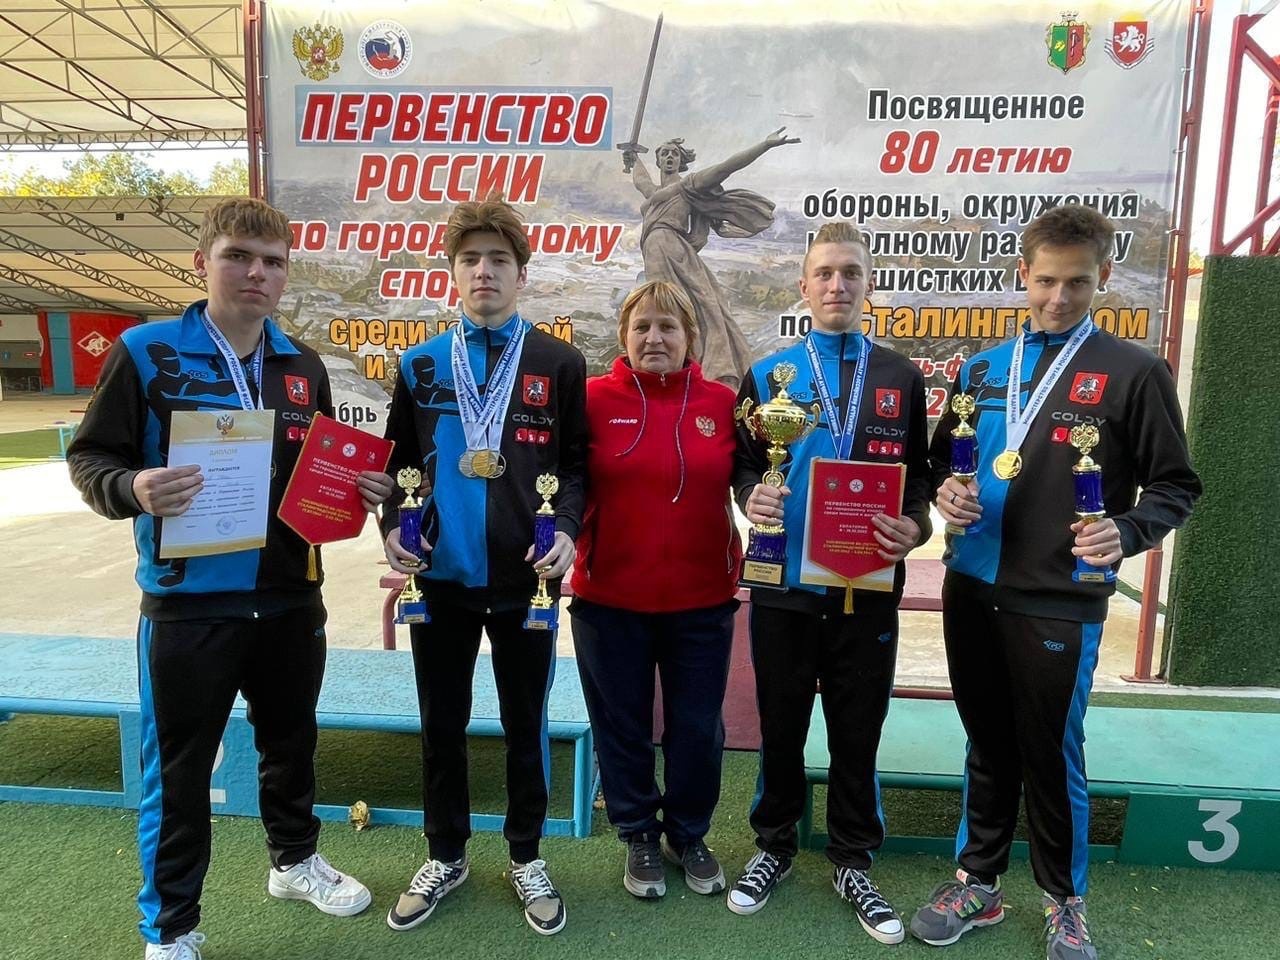 Ставим рекорды: городошники из ТиНАО одержали победу на Первенстве России